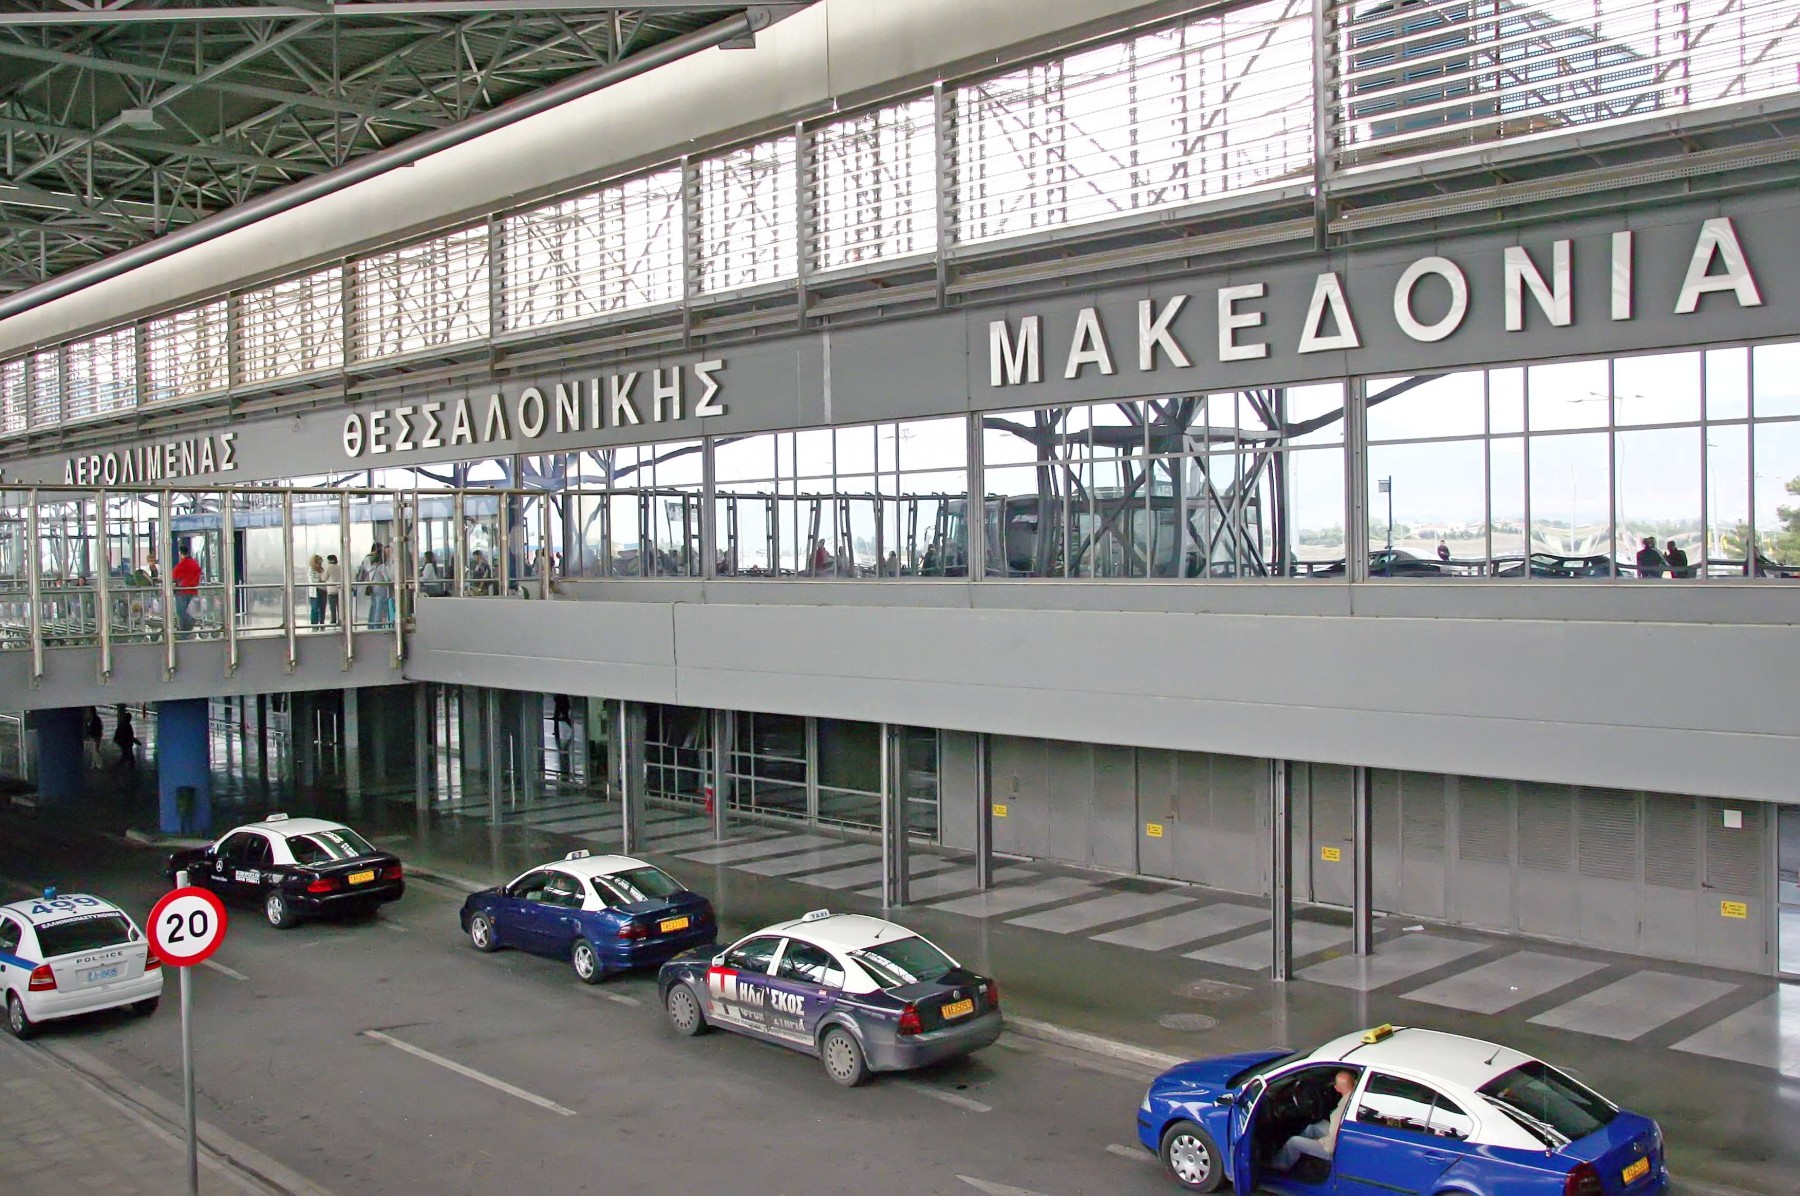 Επένδυση 7,2 εκατ. ευρώ στο αεροδρόμιο Μακεδονία | Ναυτικά Χρονικά